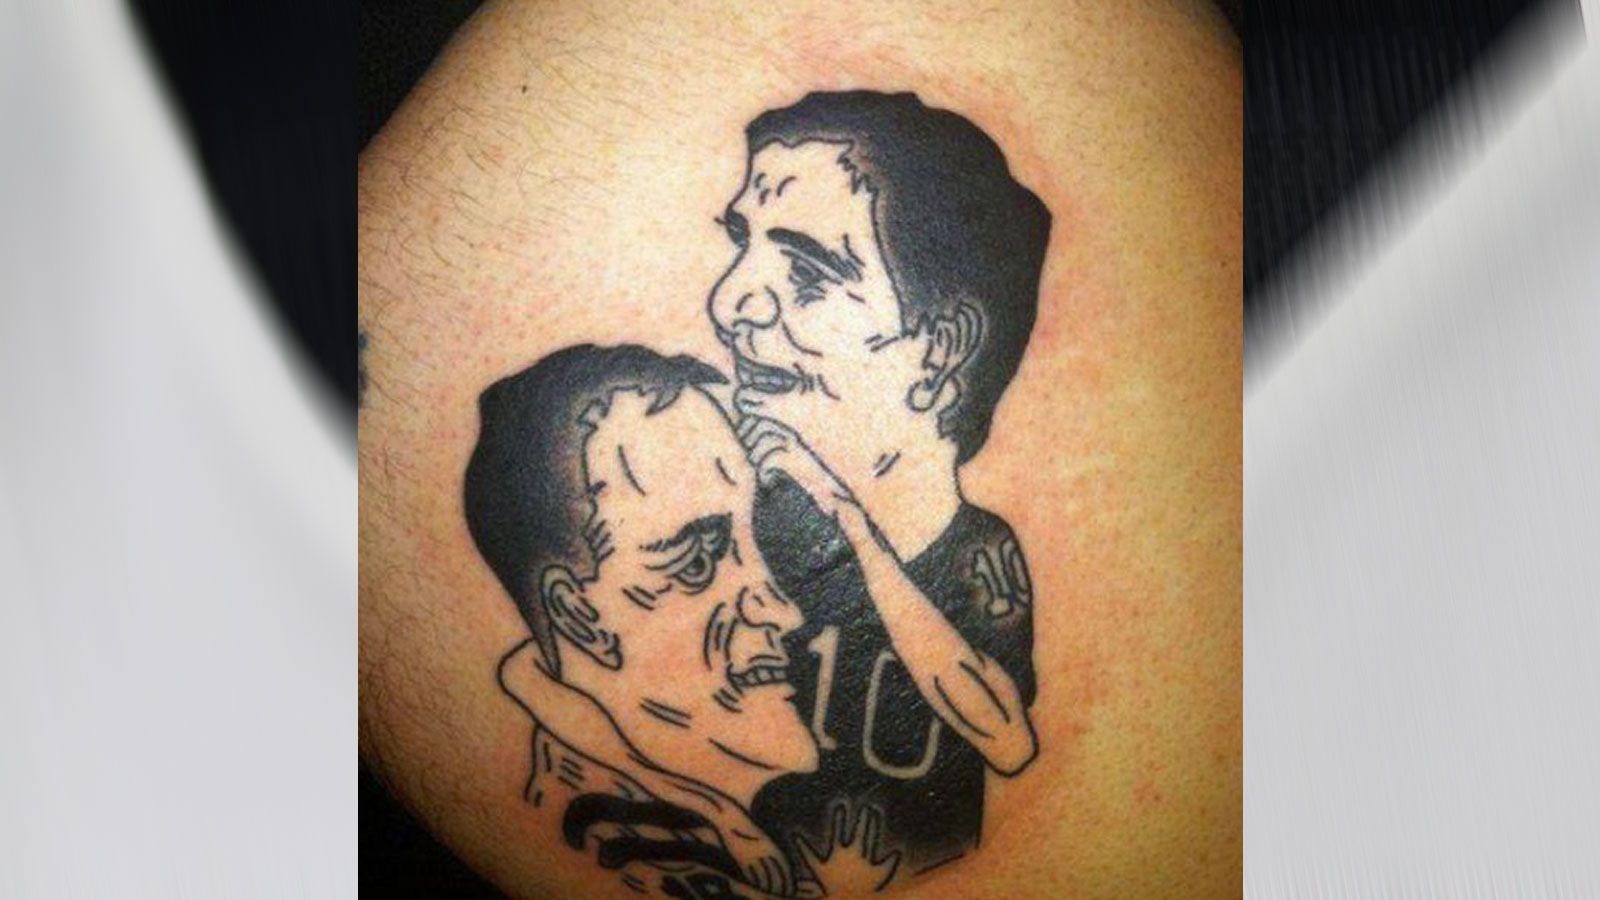 
                <strong>Manning-Brüder weniger gut getroffen</strong><br>
                Als schlechtestes NFL-Tattoo überhaupt wurde dieses Kunstwerk angepriesen - es zeigt die Manning-Brüder Peyton und Eli. Tatsächlich ist sehr fragwürdig, ob sich die beiden Quarterback-Legenden hier als gut getroffen ansehen würden.
              